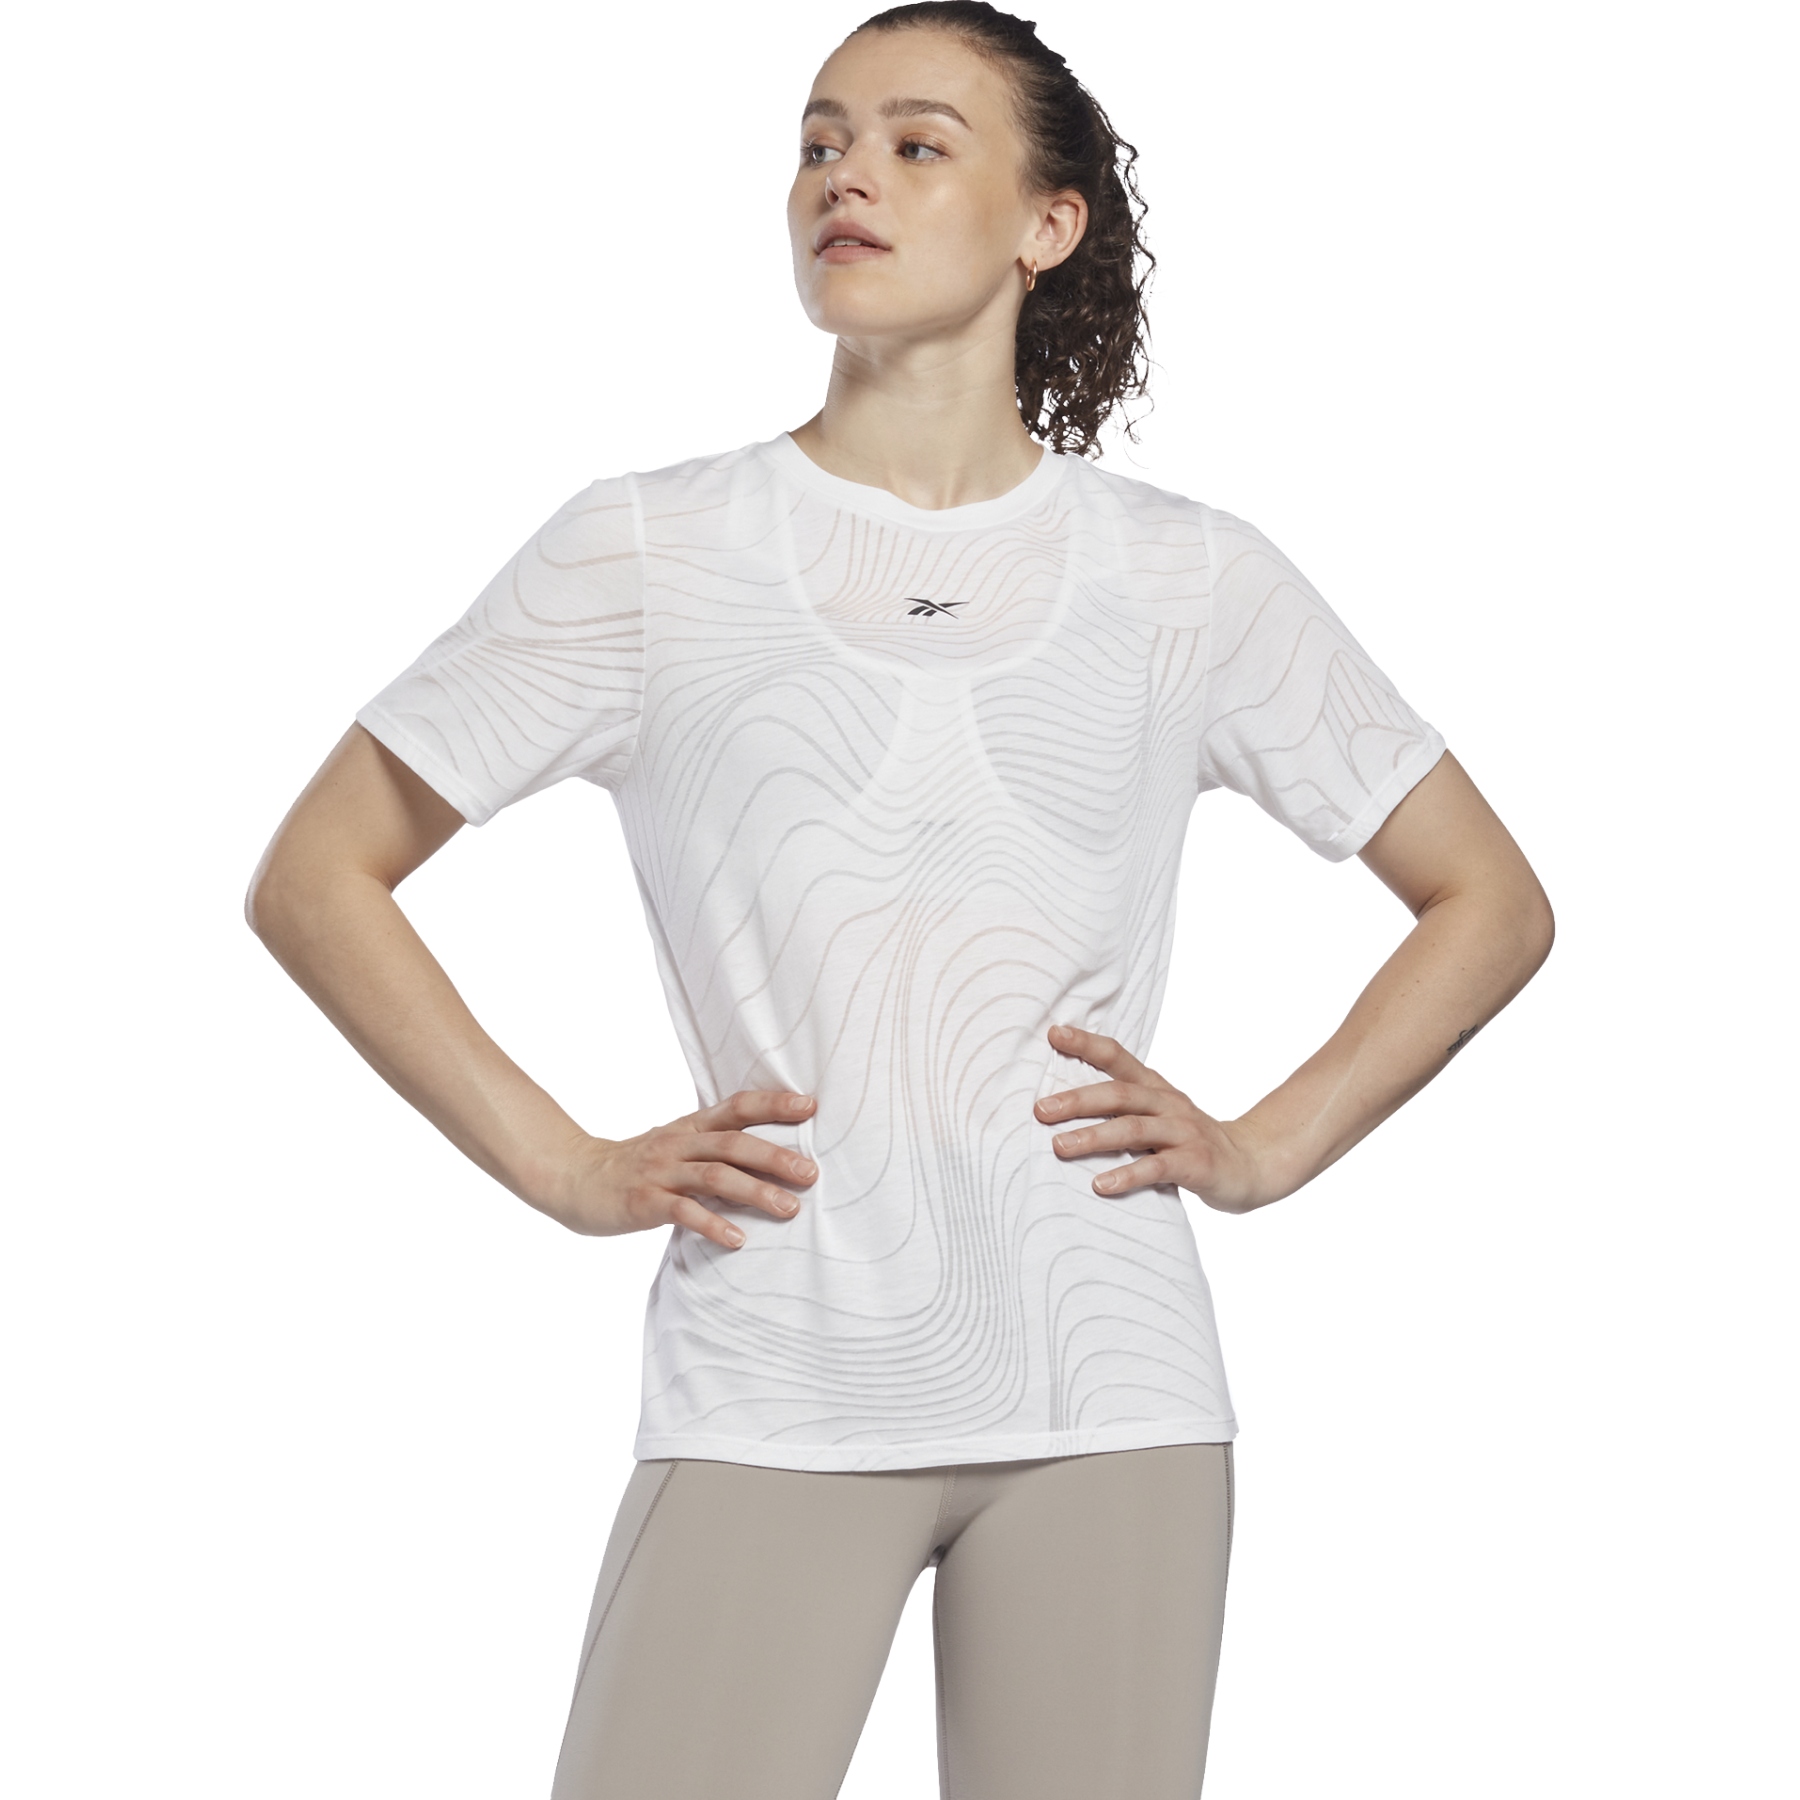 Produktbild von Reebok Burnout T-Shirt Damen - weiß